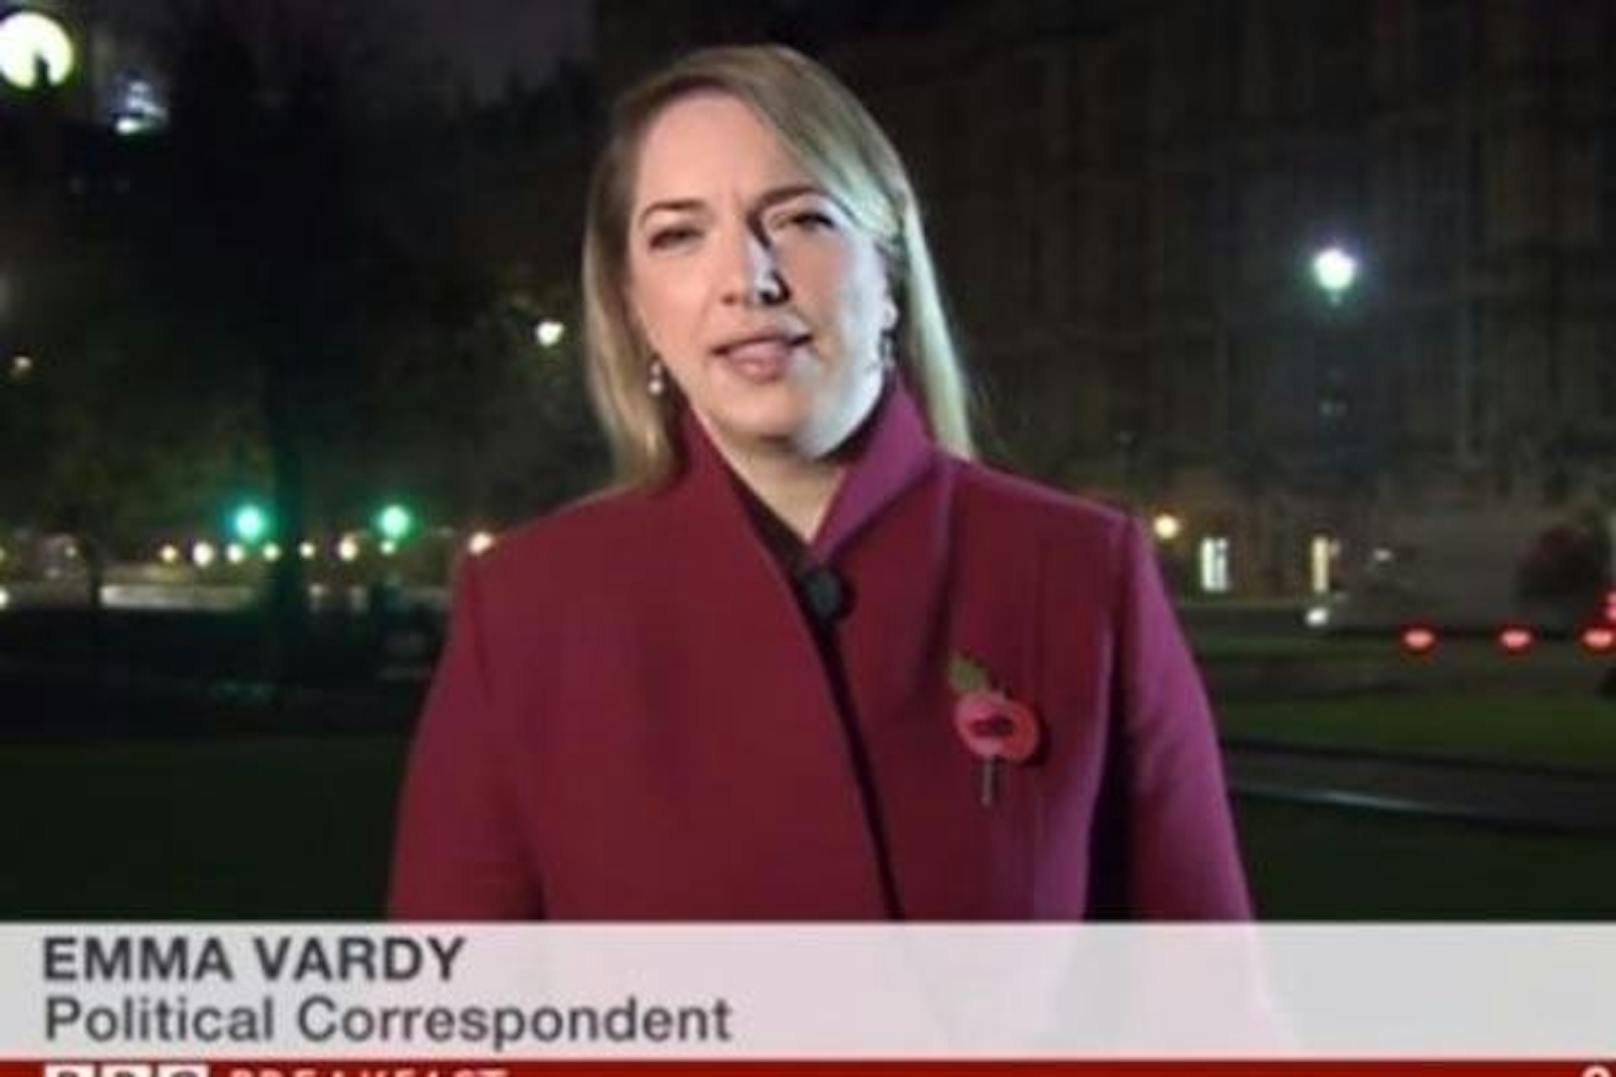 Diese BBC-Reporterin hat wirklich Nerven aus Stahl: Journalistin Emma Vardy ließ sich nämlich nicht einmal dann aus dem Konzept bringen, als sie von lauten Sex-Geräuschen einer Dame übertönt wurde. Doch irgendetwas stimmte da doch nicht, oder? Hier lesen Sie die ganze Story: <a href="https://www.heute.at/timeout/virale_videos/story/BBC-Reporterin-von-Sex-Geraeuschen-uebertoent-44075815" target="_blank">BBC-Reporterin von Sex-Geräuschen übertönt</a>